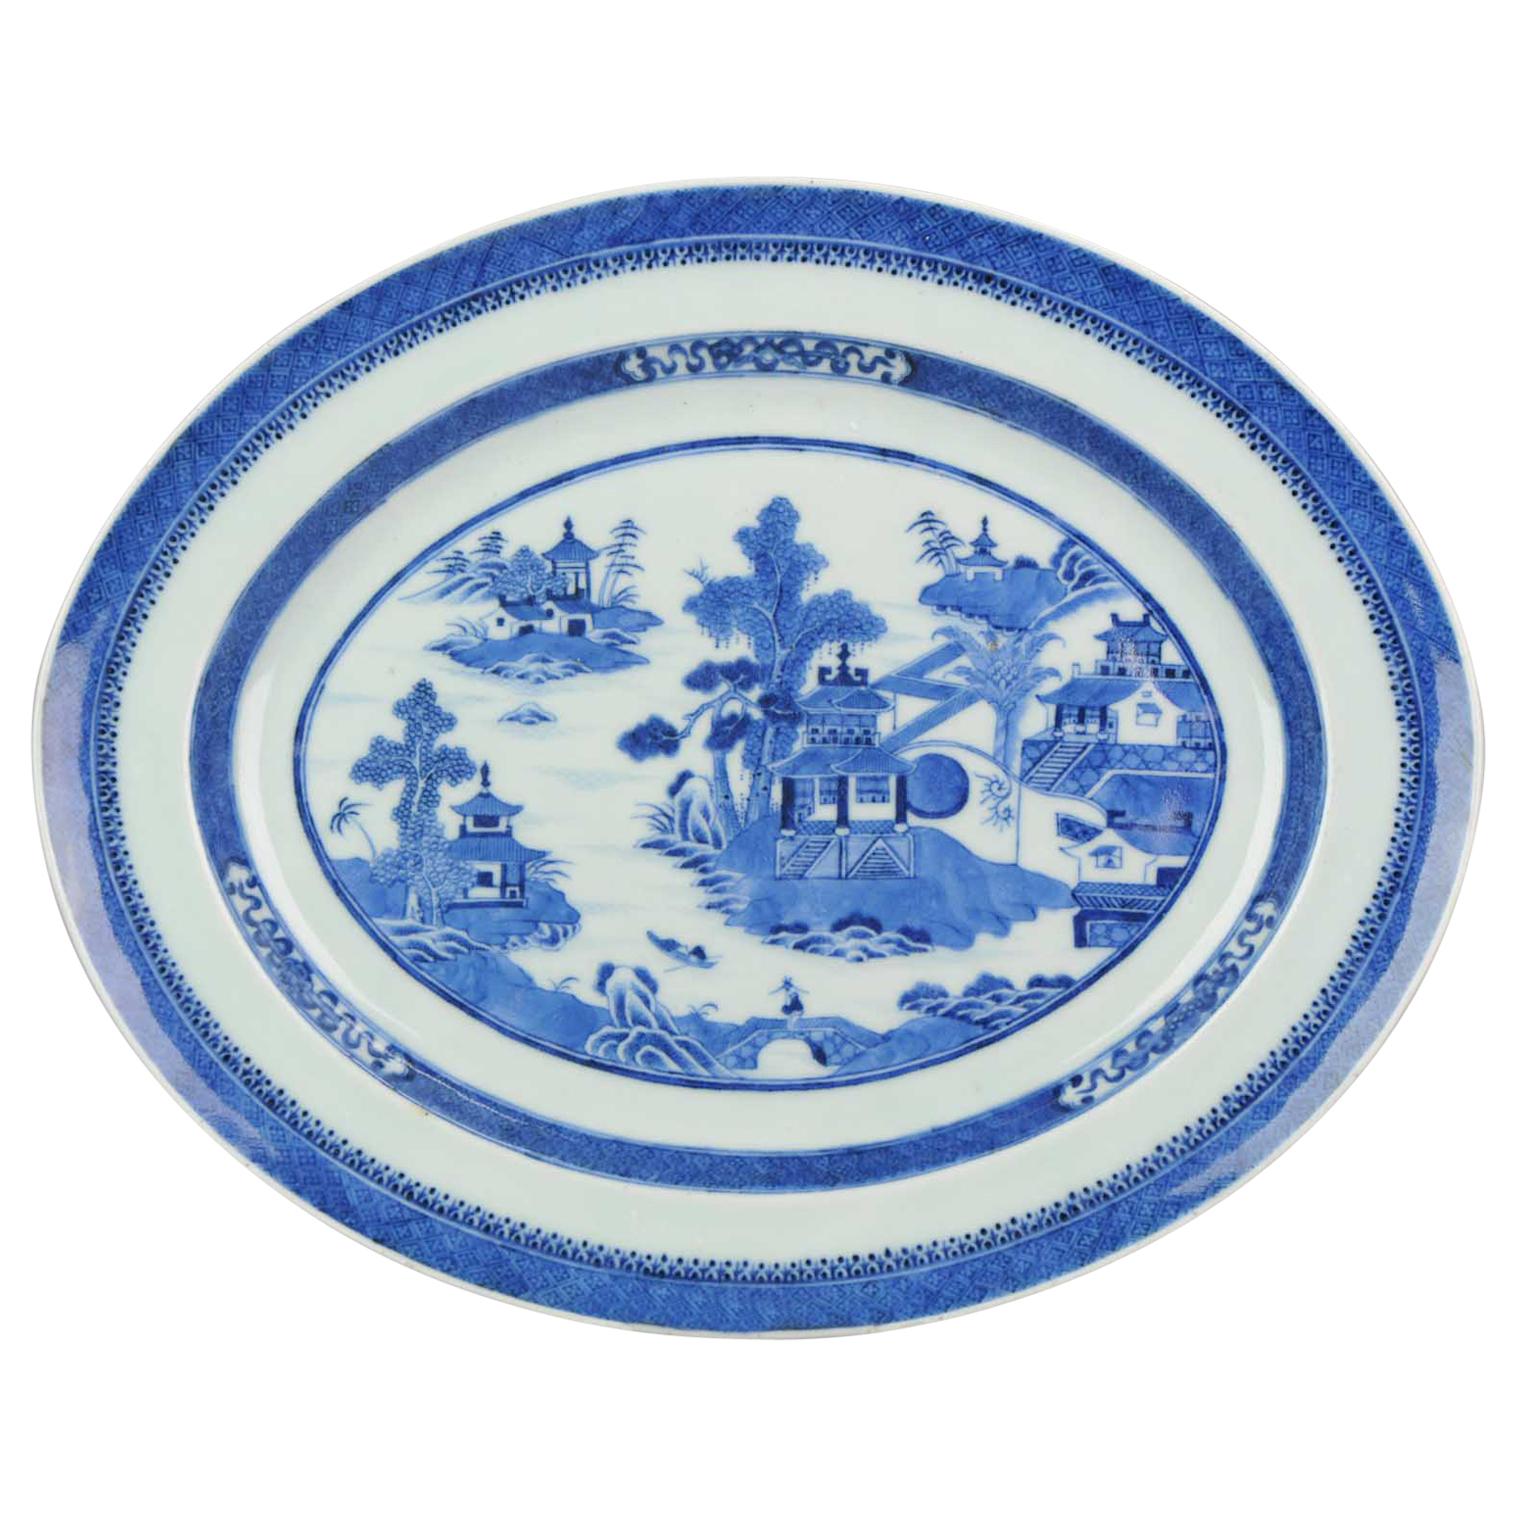 Grande assiette de service ancienne Jiaqing Qing en porcelaine chinoise bleue et blanche